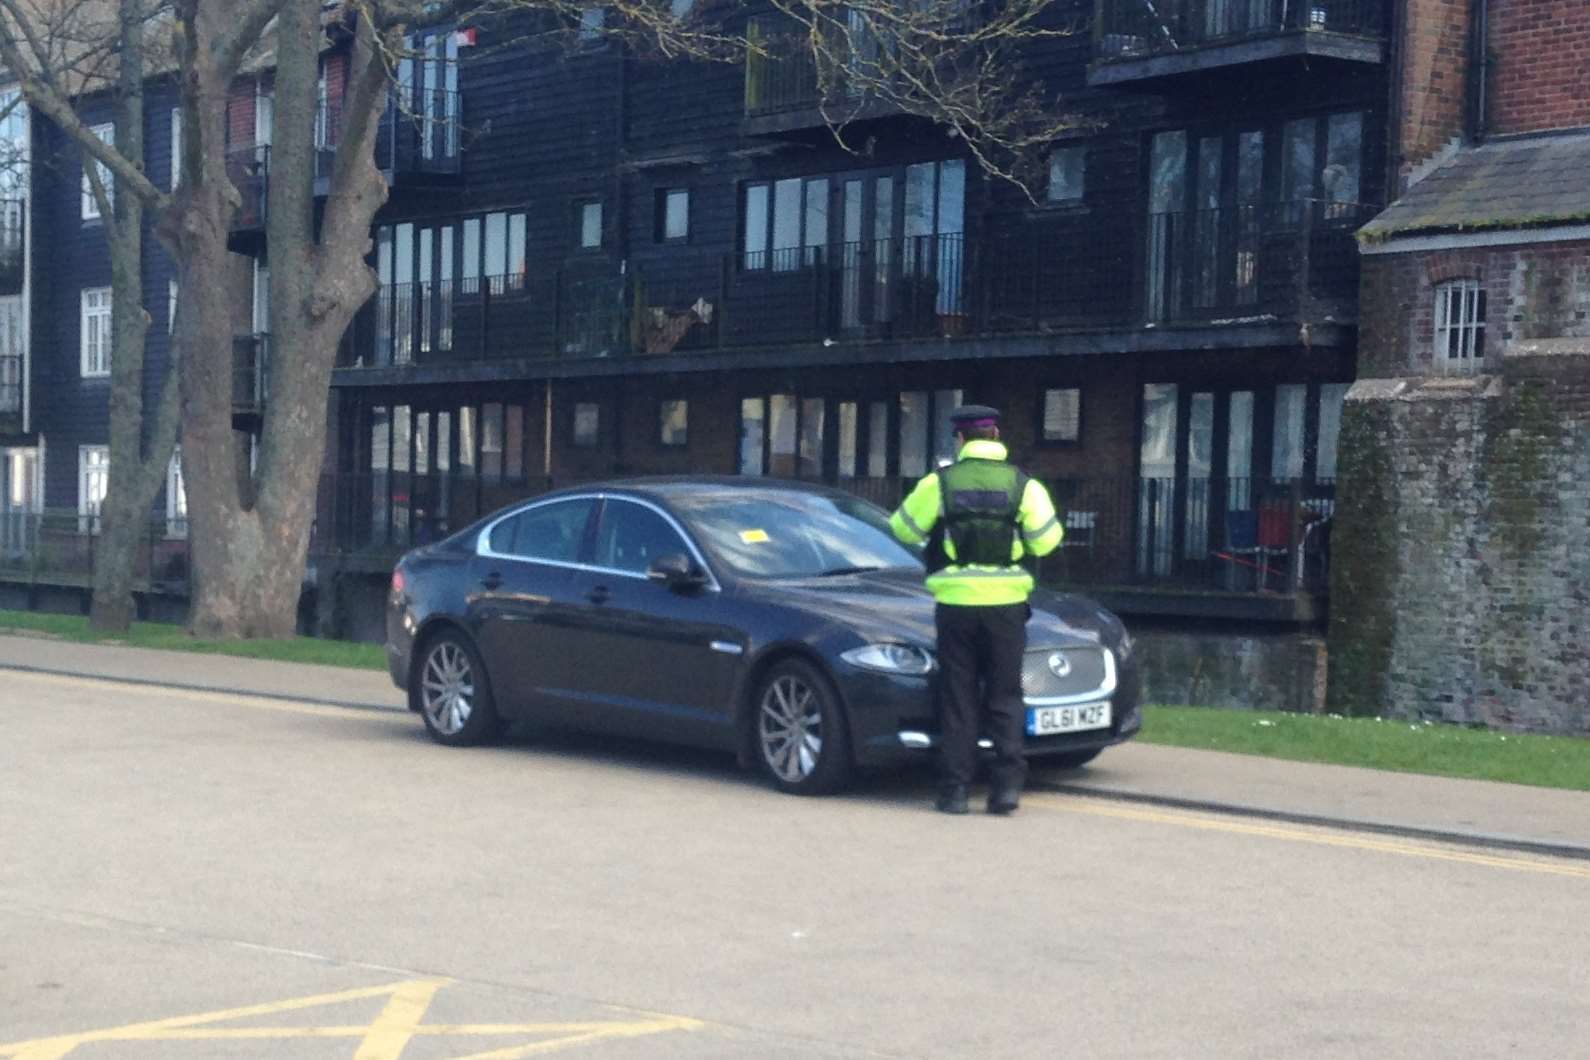 A parking attendant slaps a ticket on Mr Carmichael's Jaguar